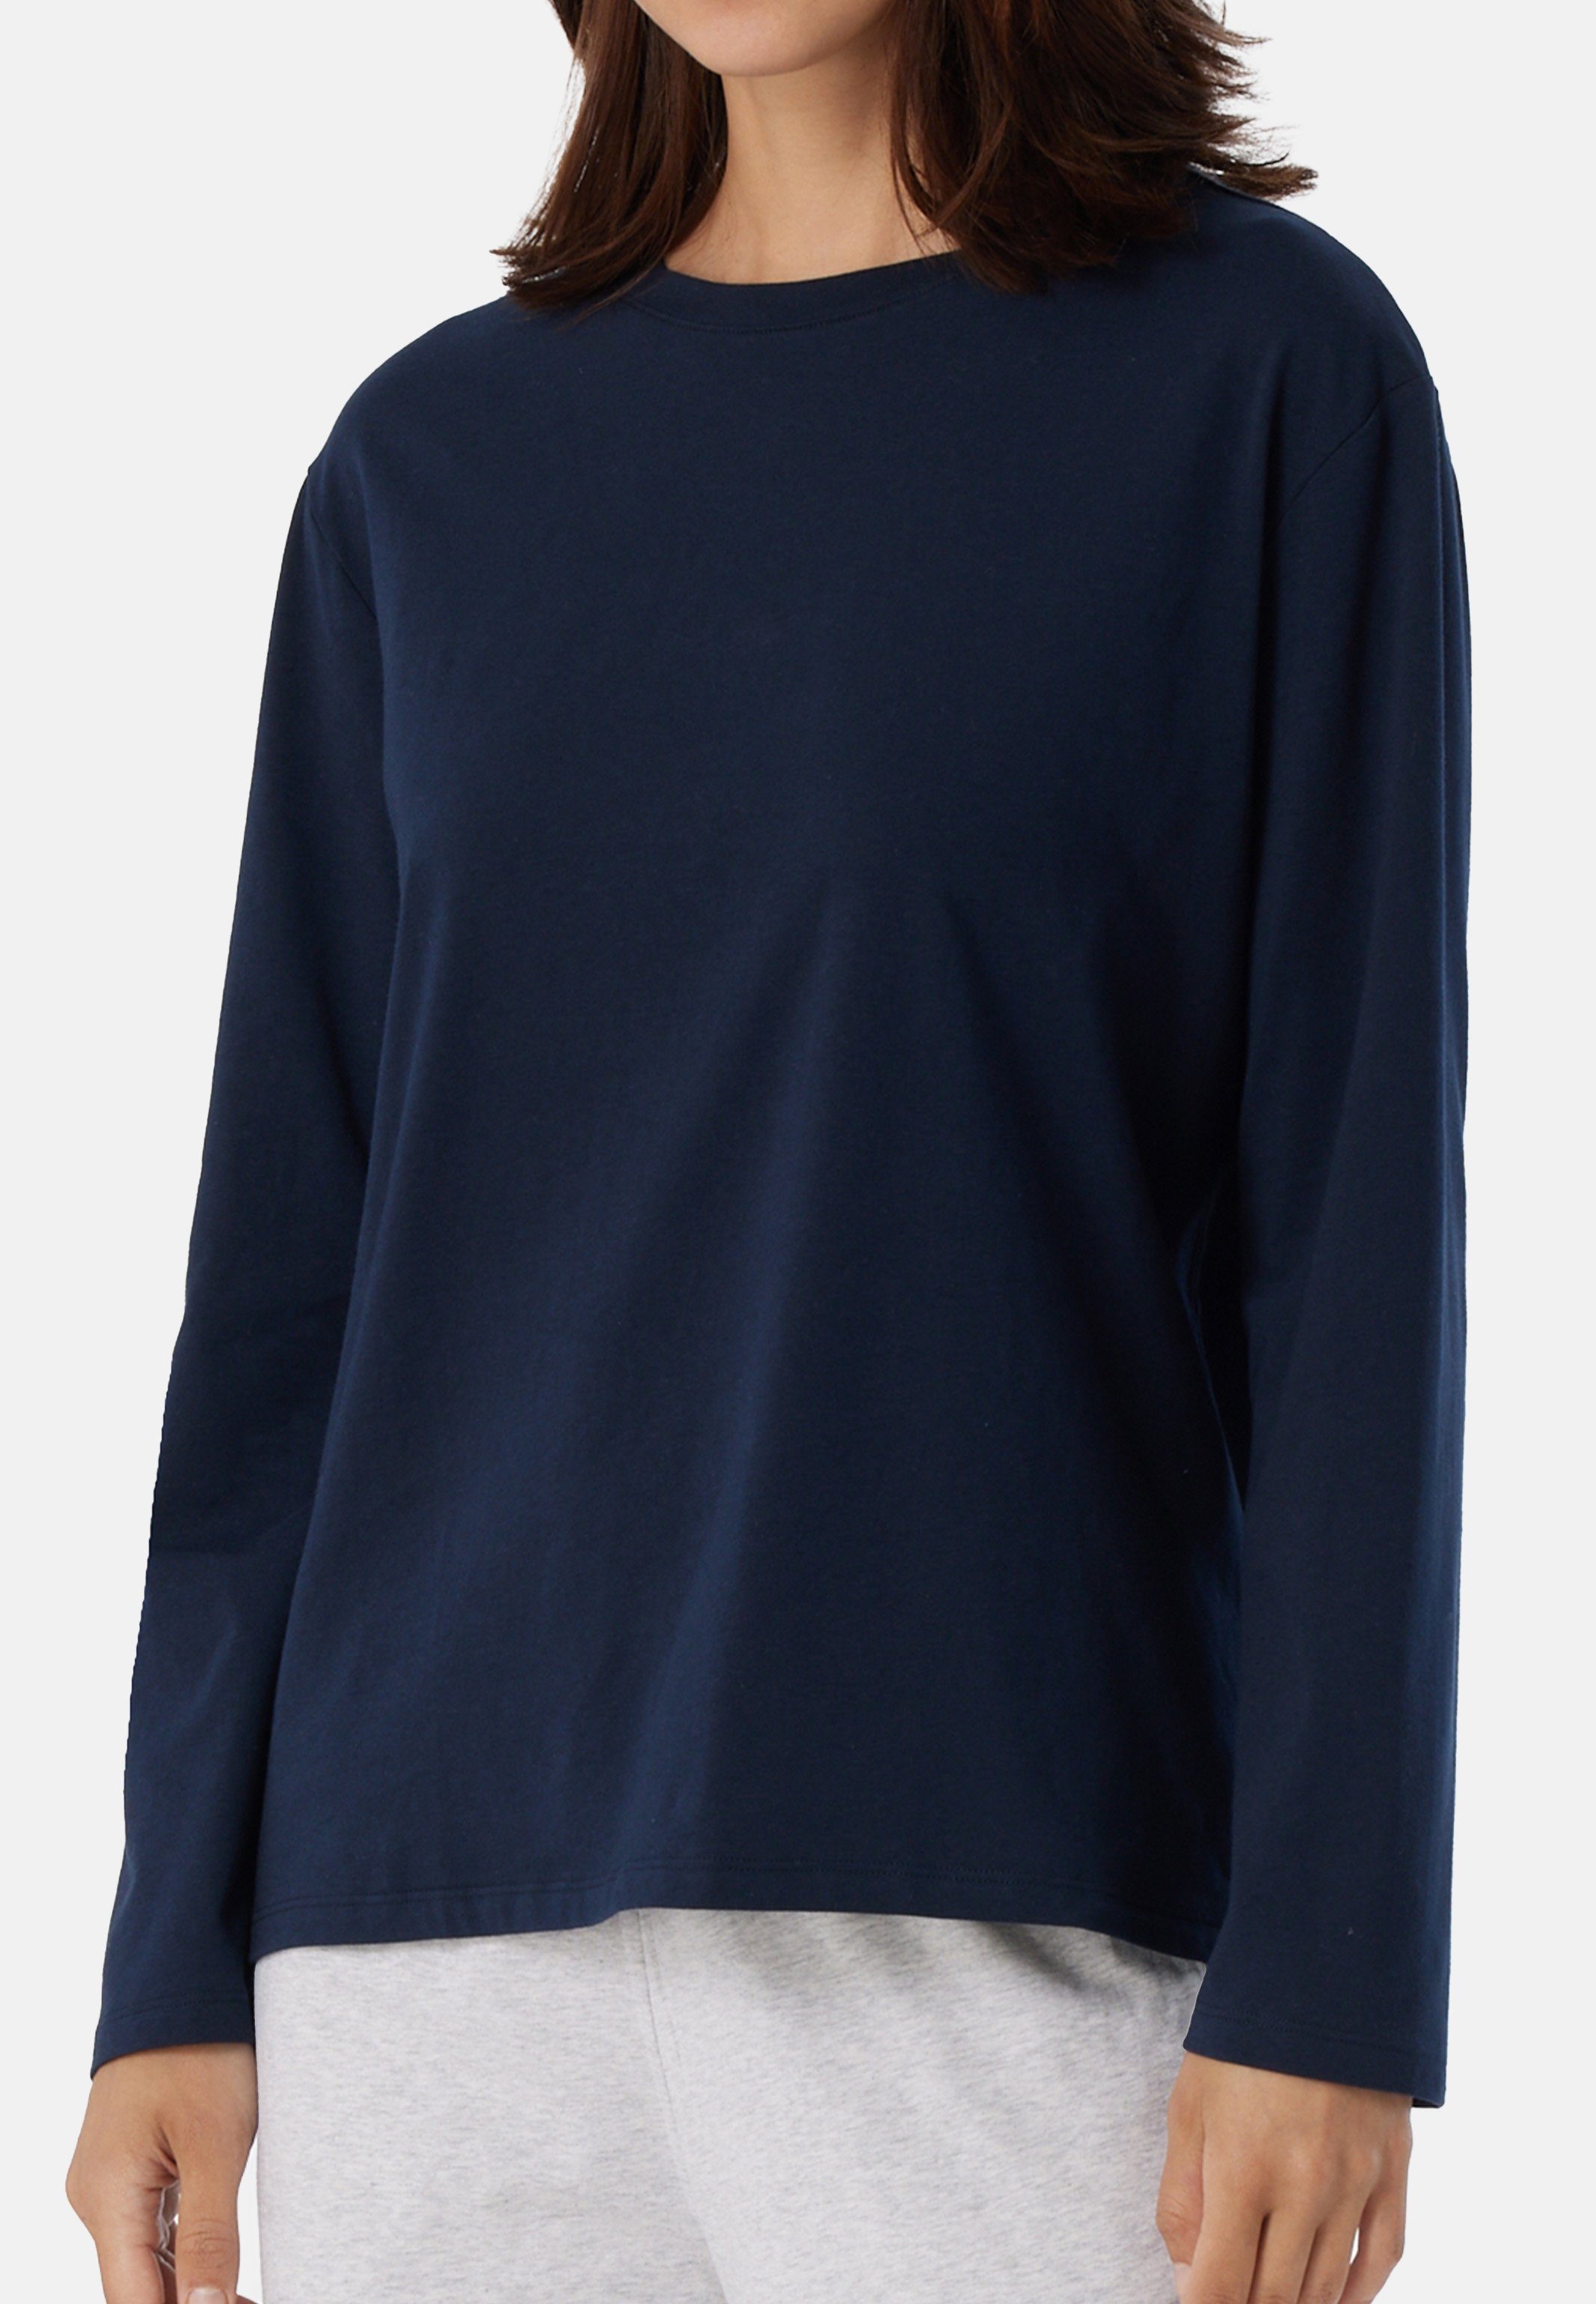 langarm & Relax - Cotton (1-tlg) Shirt Dunkelblau Pyjamaoberteil Schiesser Mix Baumwolle - Schlafanzug Organic